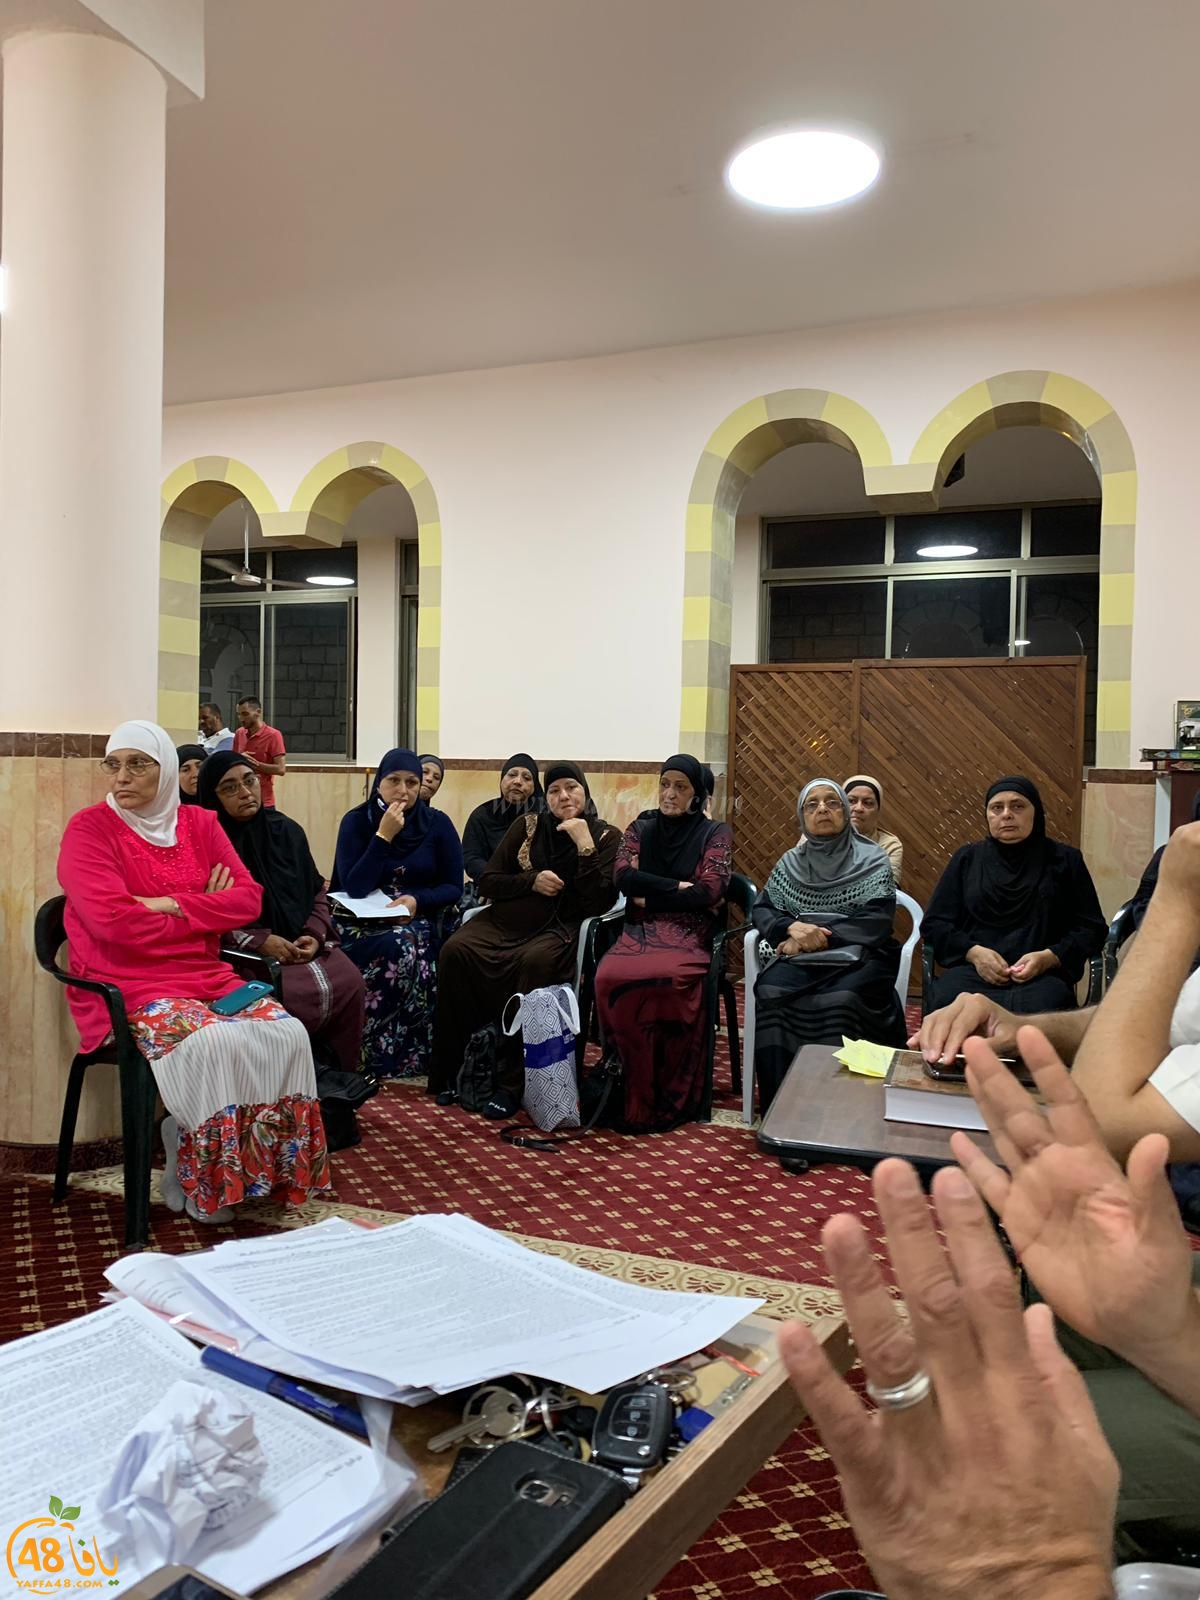  لجنة الحج والعمرة بيافا تُنظم لقاءً ضمن سلسلة دروس الحجاج في مسجد العجمي